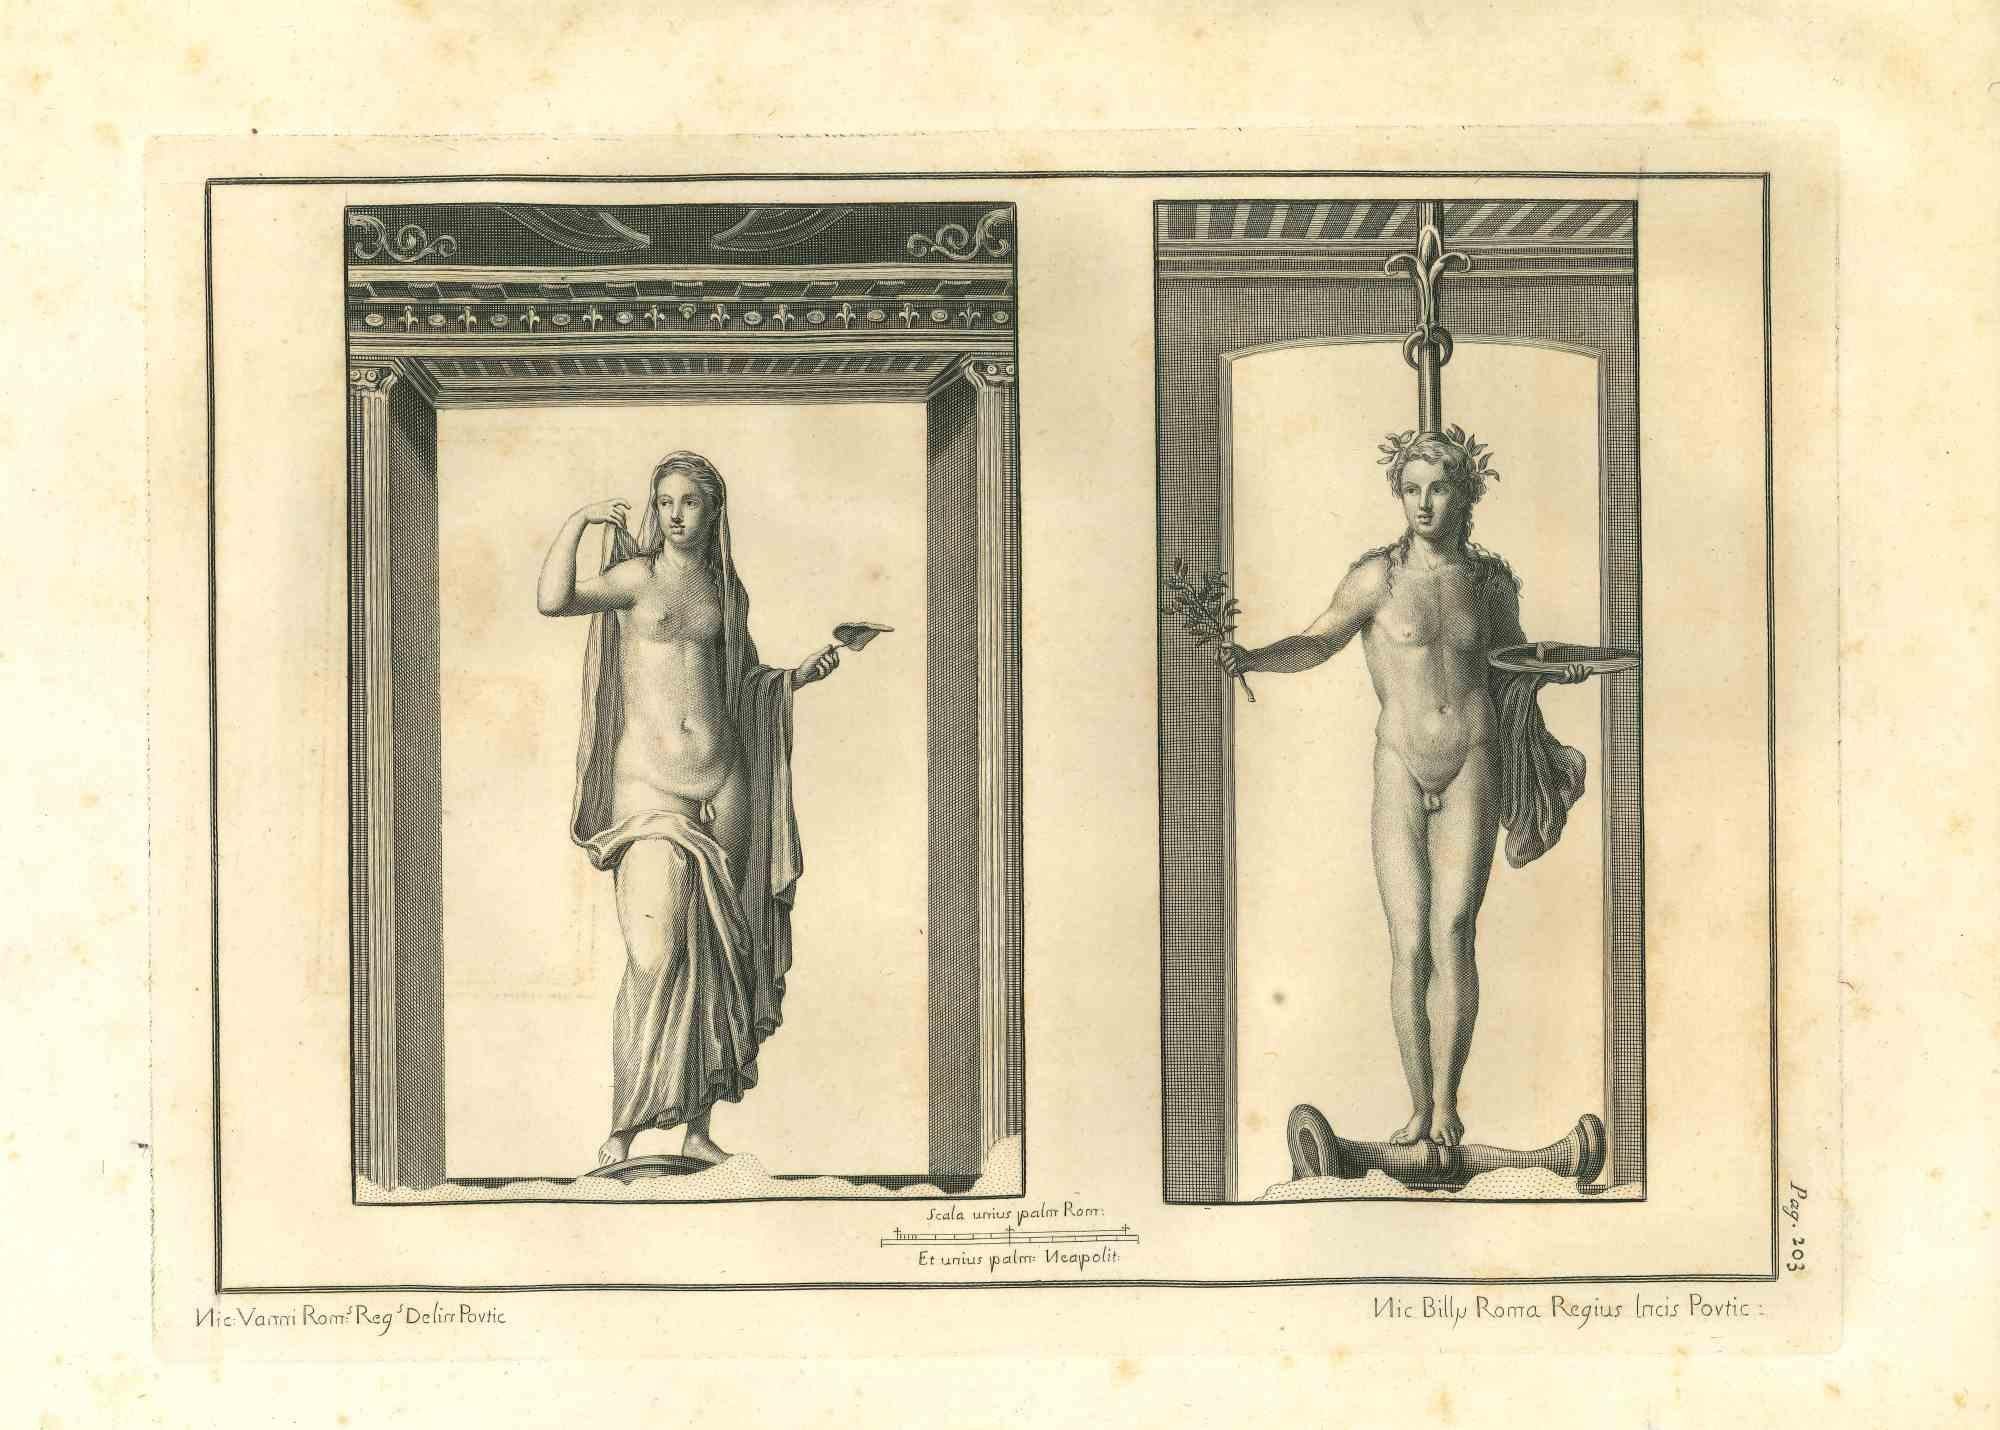 Statues romaines antiques de la série "Antiquités d'Herculanum", est une gravure originale sur papier réalisée par Nicola Billy  au 18ème siècle.

Signé sur la plaque.

Bon état, à l'exception de quelques petites taches.

La gravure appartient à la